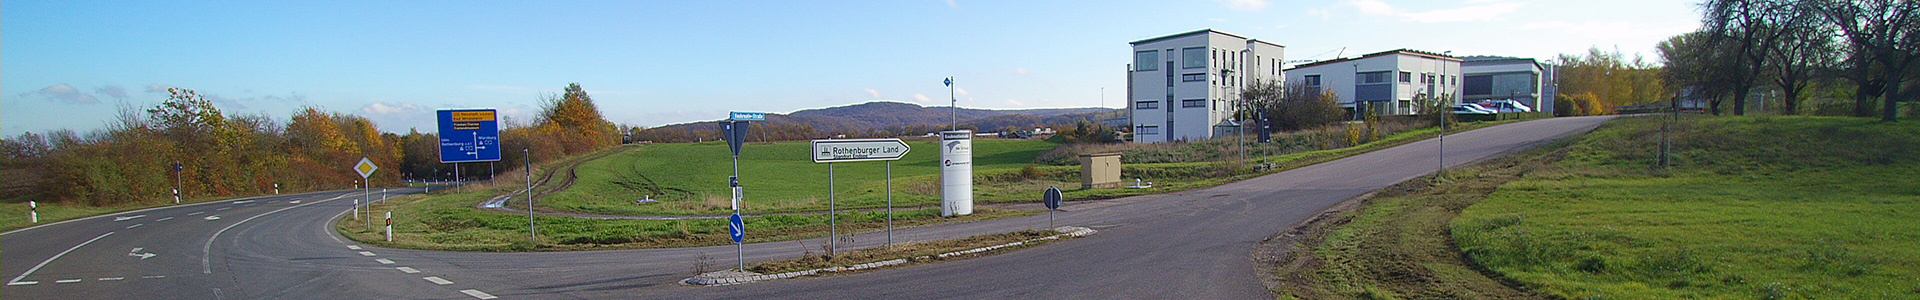 Die Einfahrt zum Gewerbepark Rothenburg ob der Tauber und Umland im Panorama